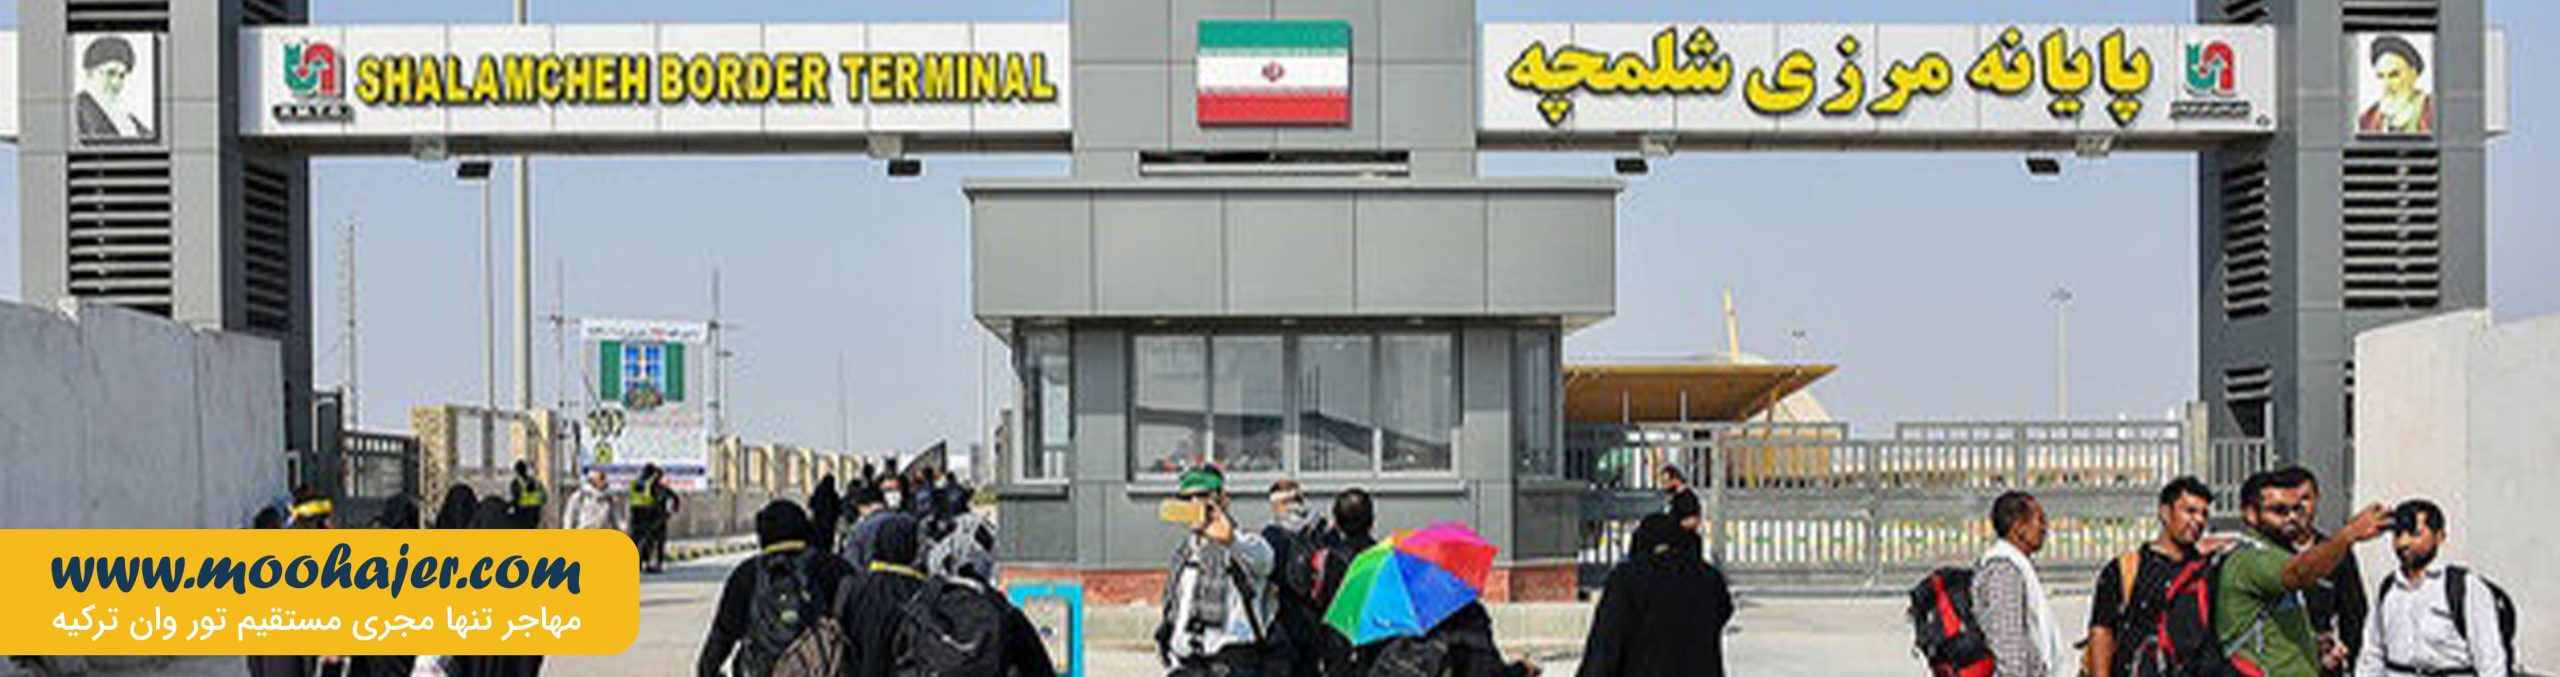 مرز های ایران | گذرگاه های مرزی ایران | مهاجر سیر ایران